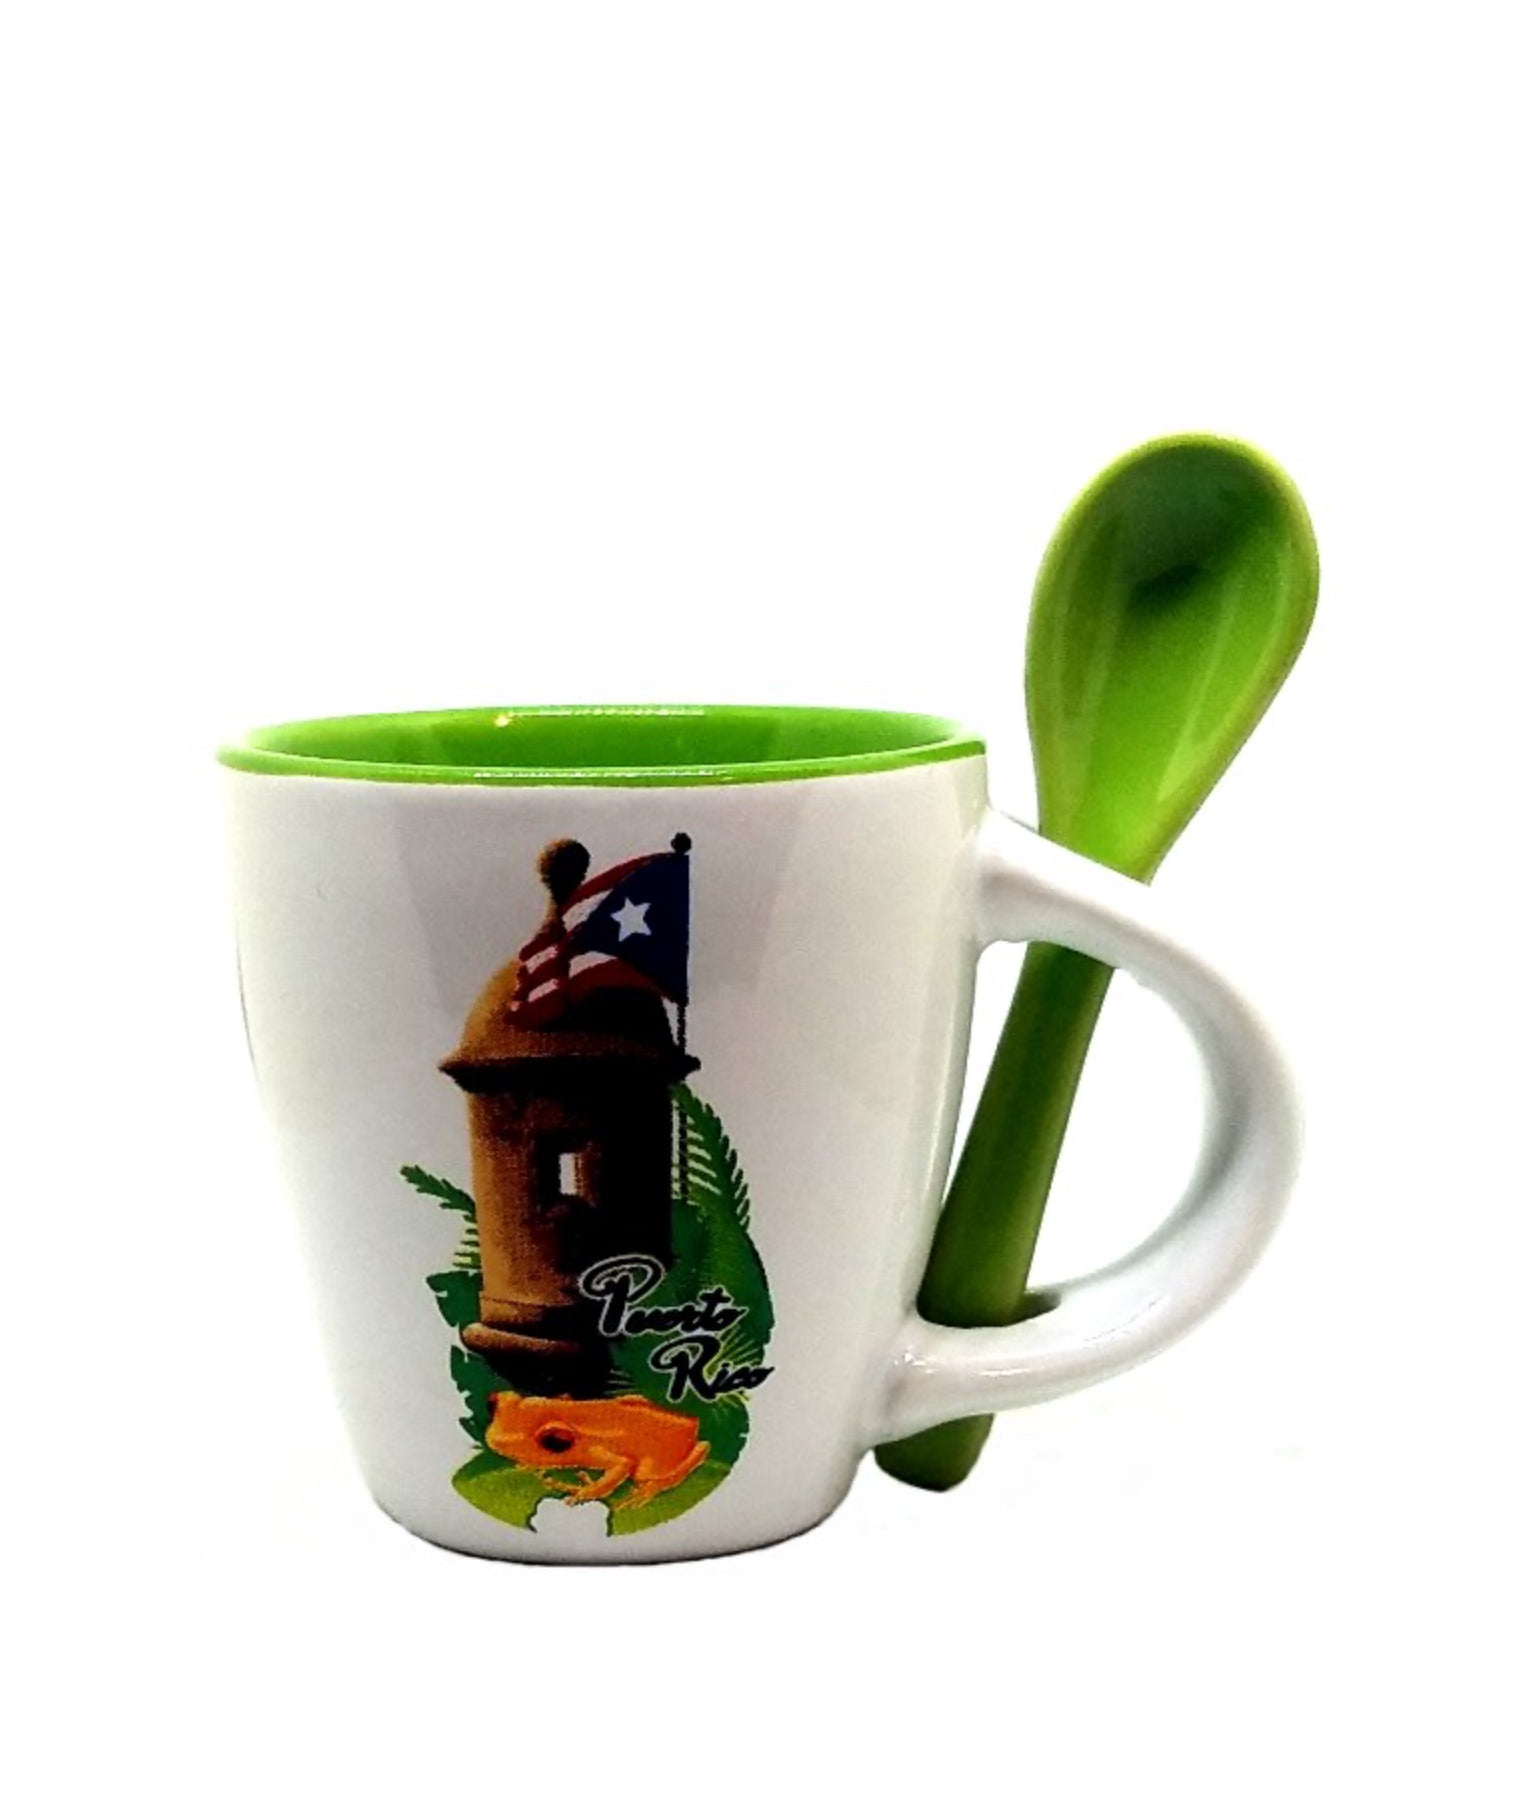 Puerto Rico Coffee Cup with Spoon Handel Ceramics Mug 10.oz